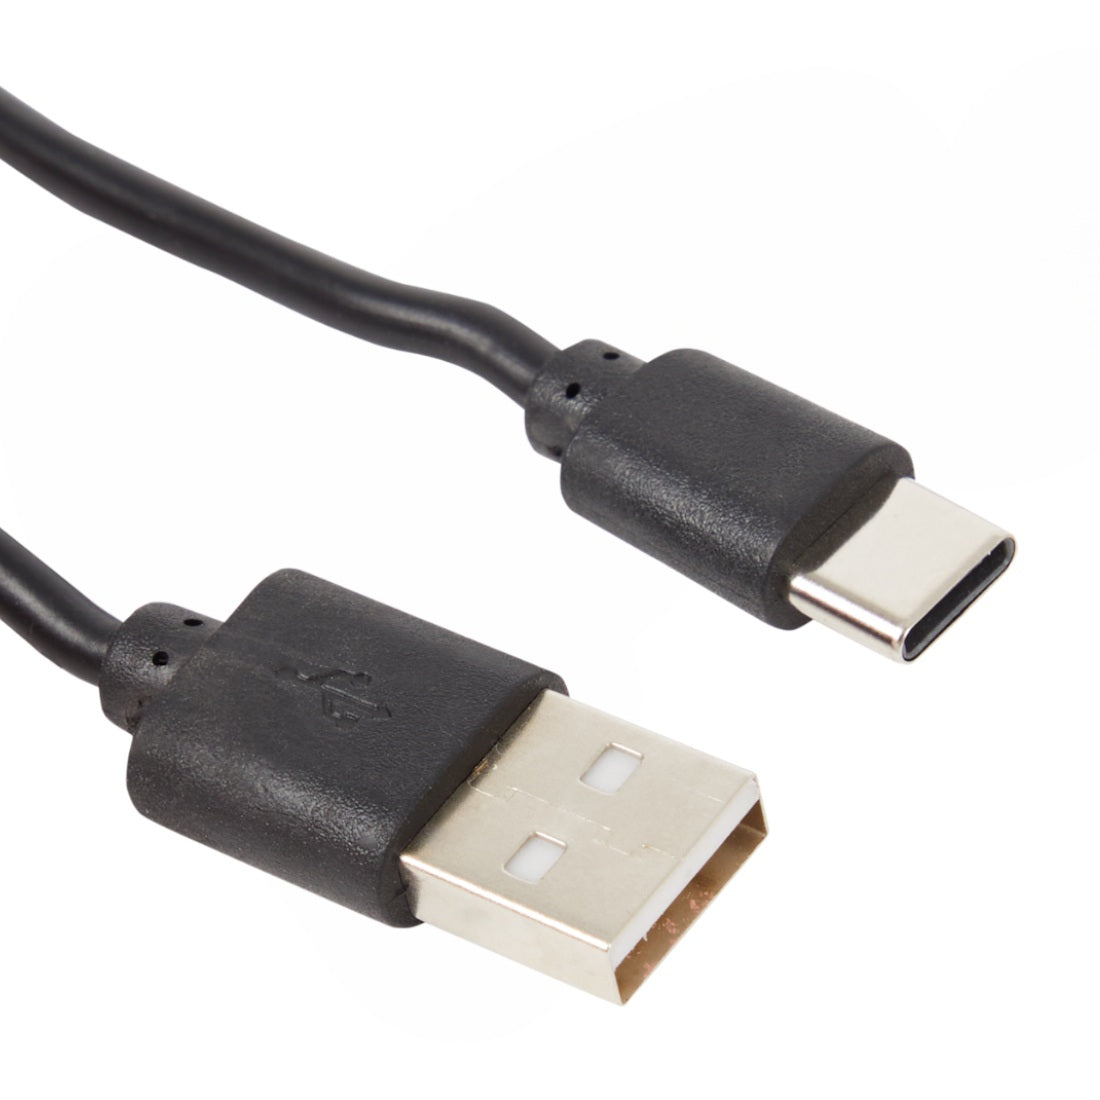 RE-LOAD Powerbank 20.000mAh Stark und Stylisch Diamond Black in verschieden Varianten USB, USB-C + Kabel